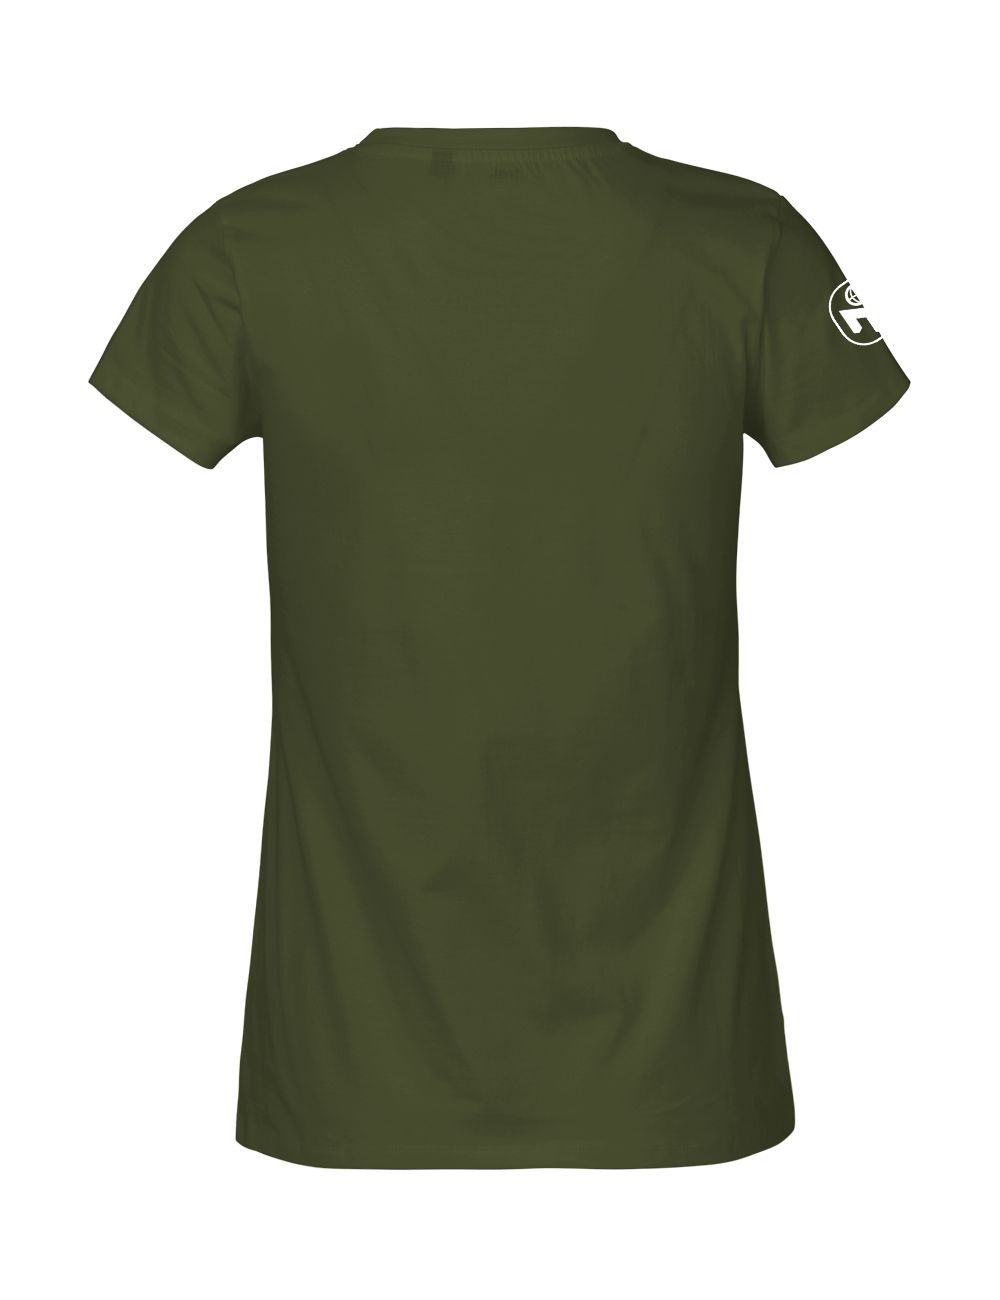 T-Shirt Damen "Nerdschutz" Premium